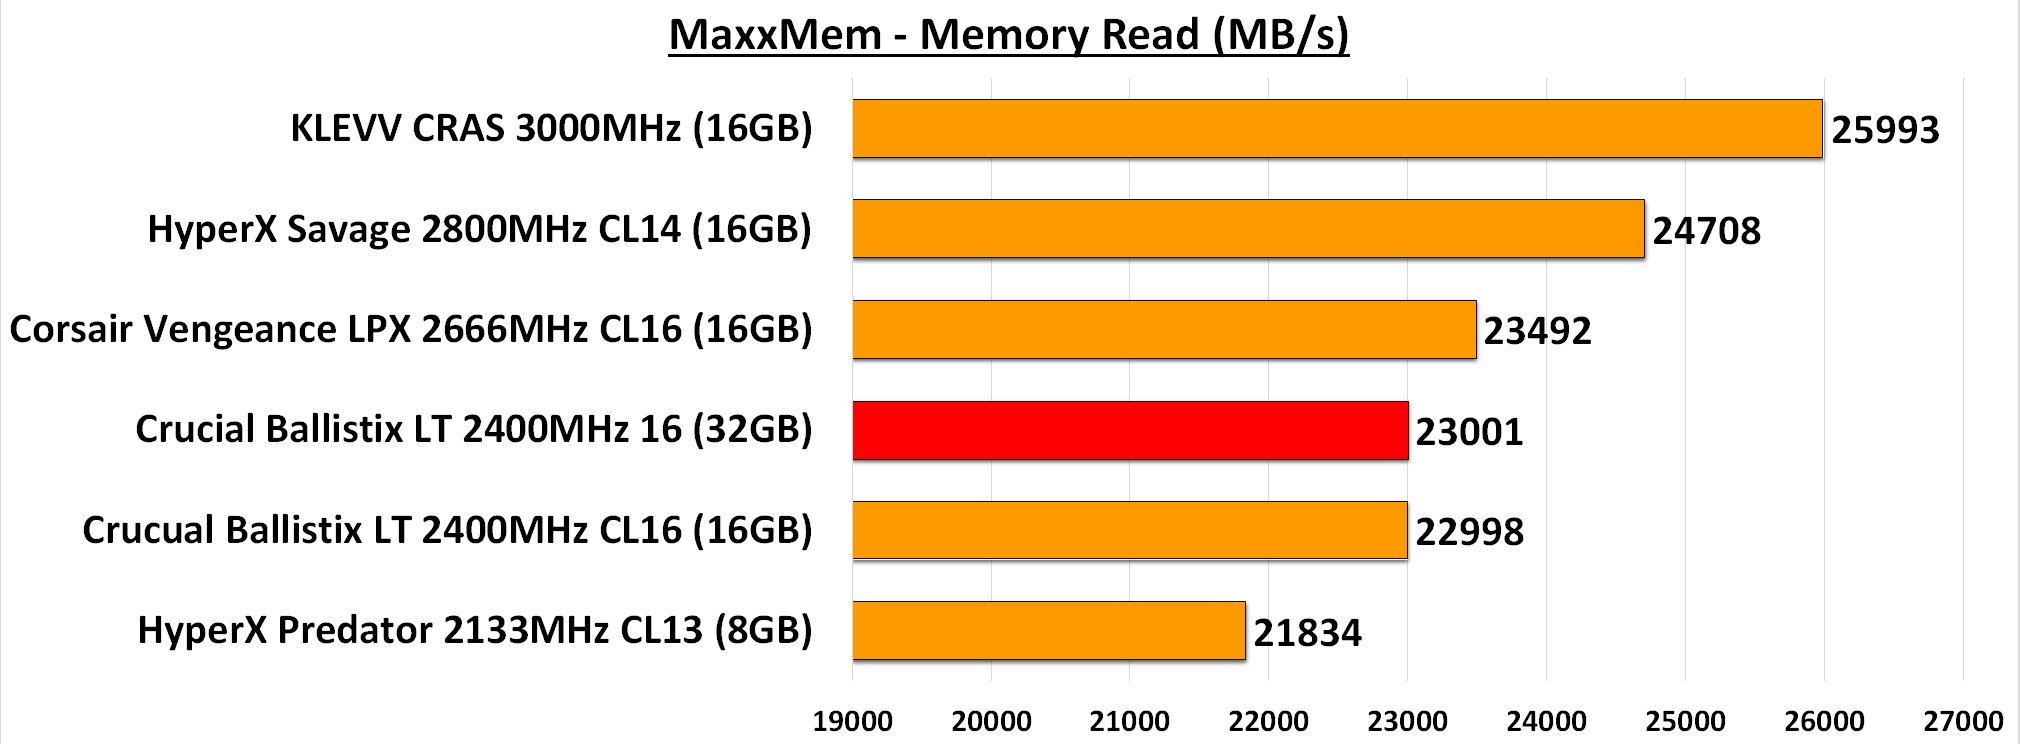 MaxxMem Memory Read